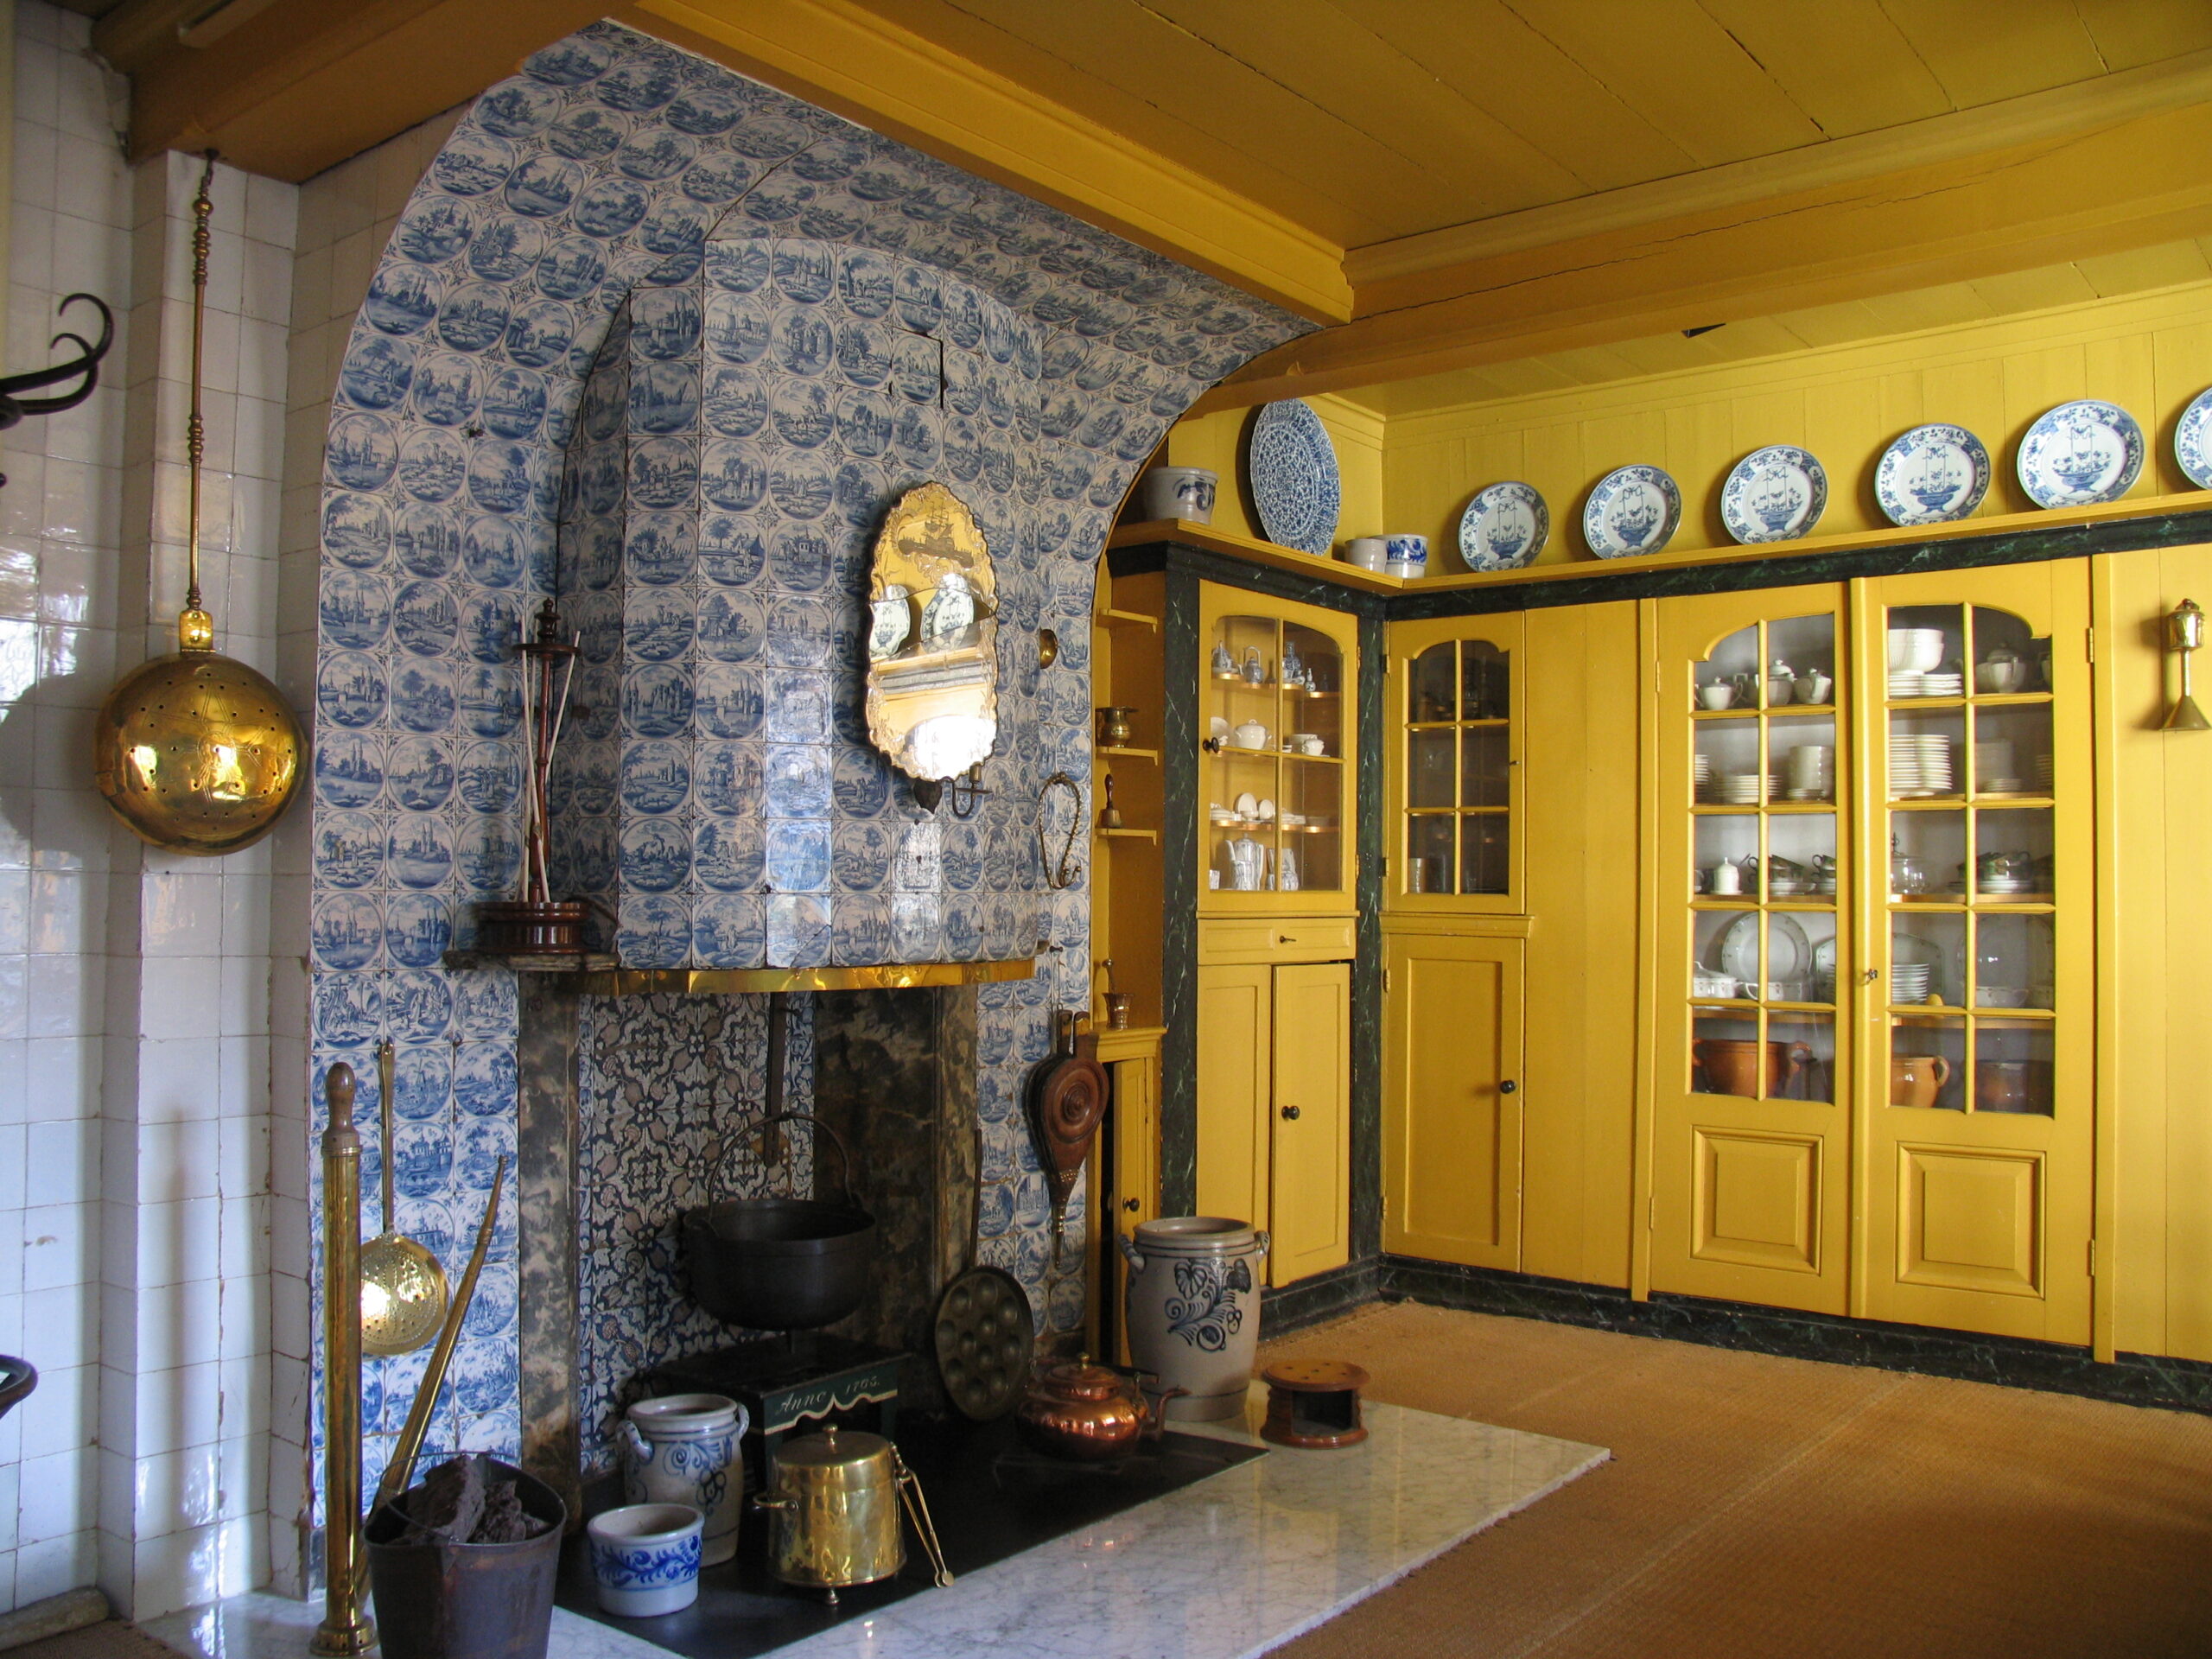 Kijkje in de pronkkeuken van het Honig Breethuis. Foto Ruud van Ritbergen